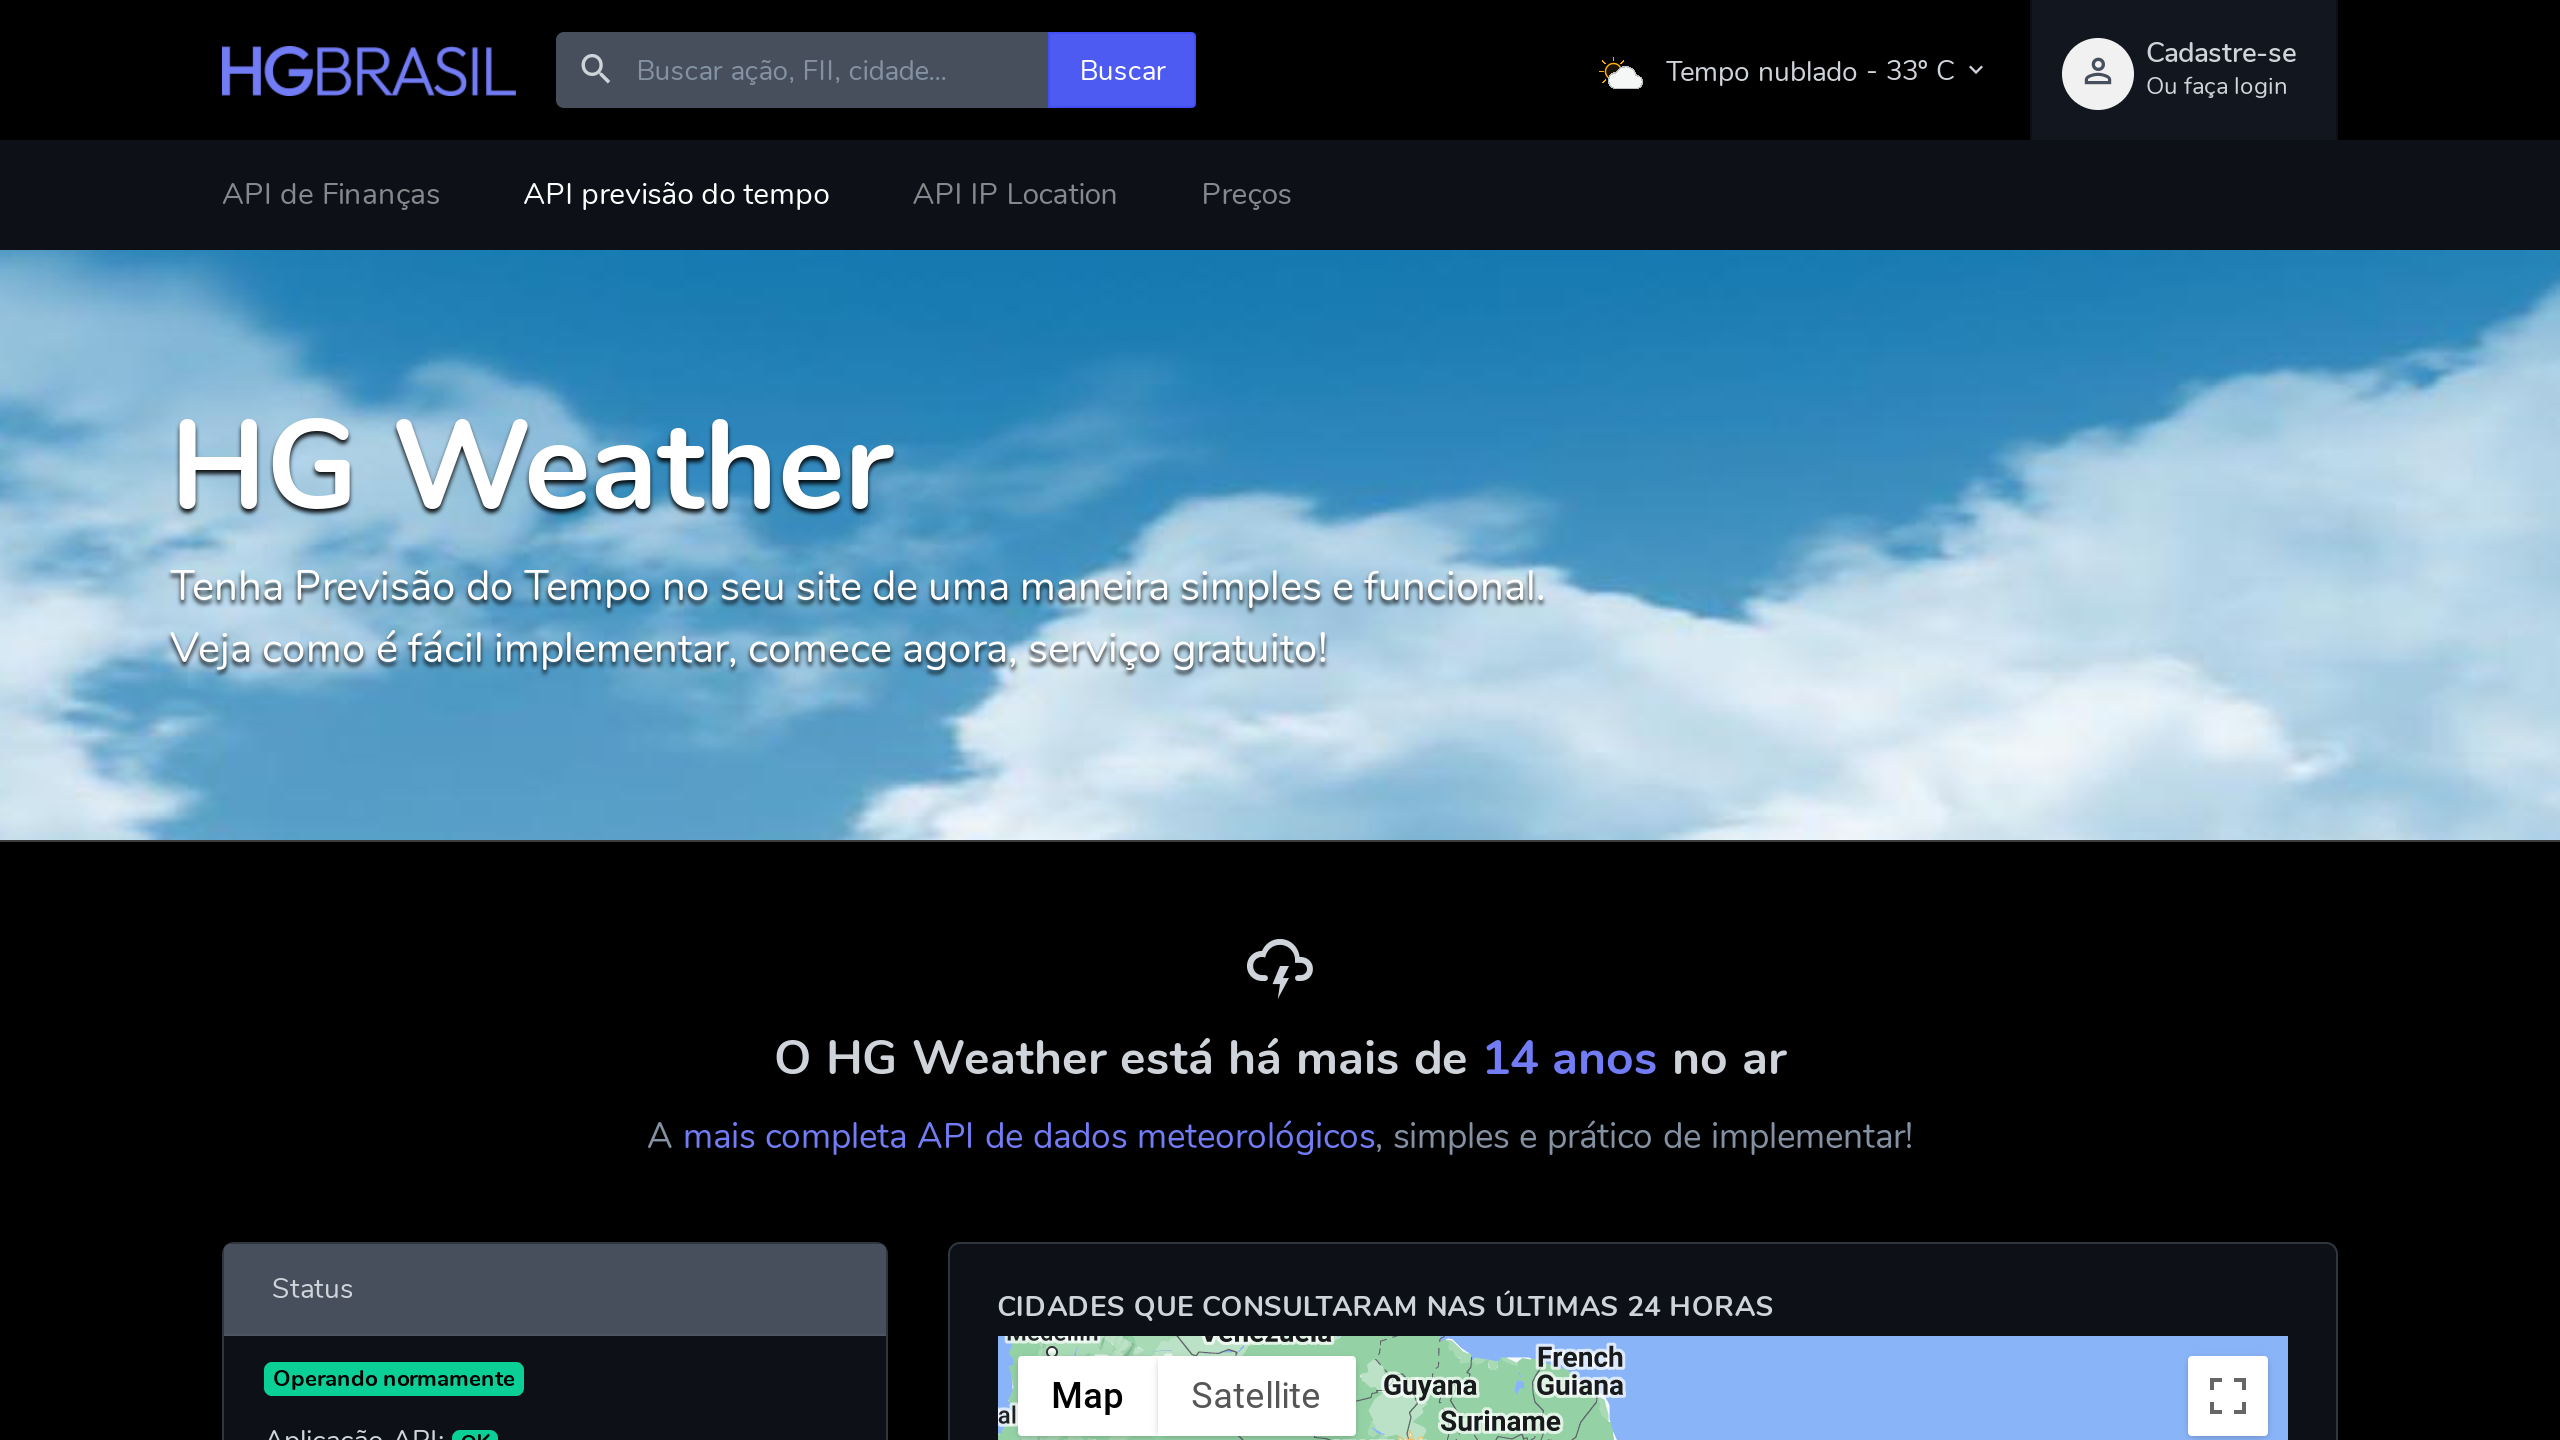 HG Weather's website screenshot